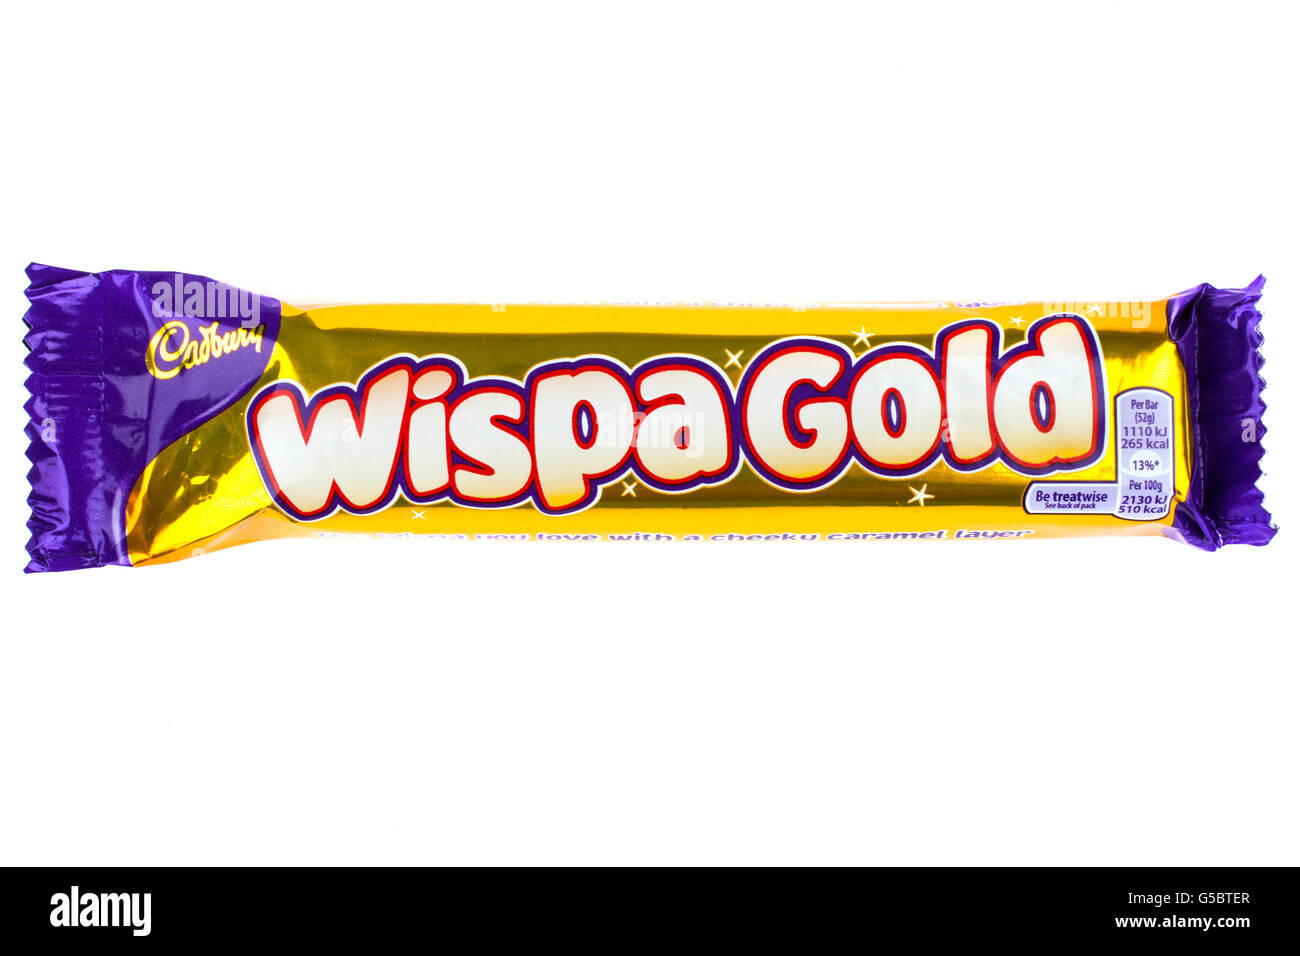 Londres, UK - 6 mai 2016 : une emprise Wispa Gold barre de chocolat fabriqués par Cadbury, photographié sur un arrière-plan uni, blanc Banque D'Images